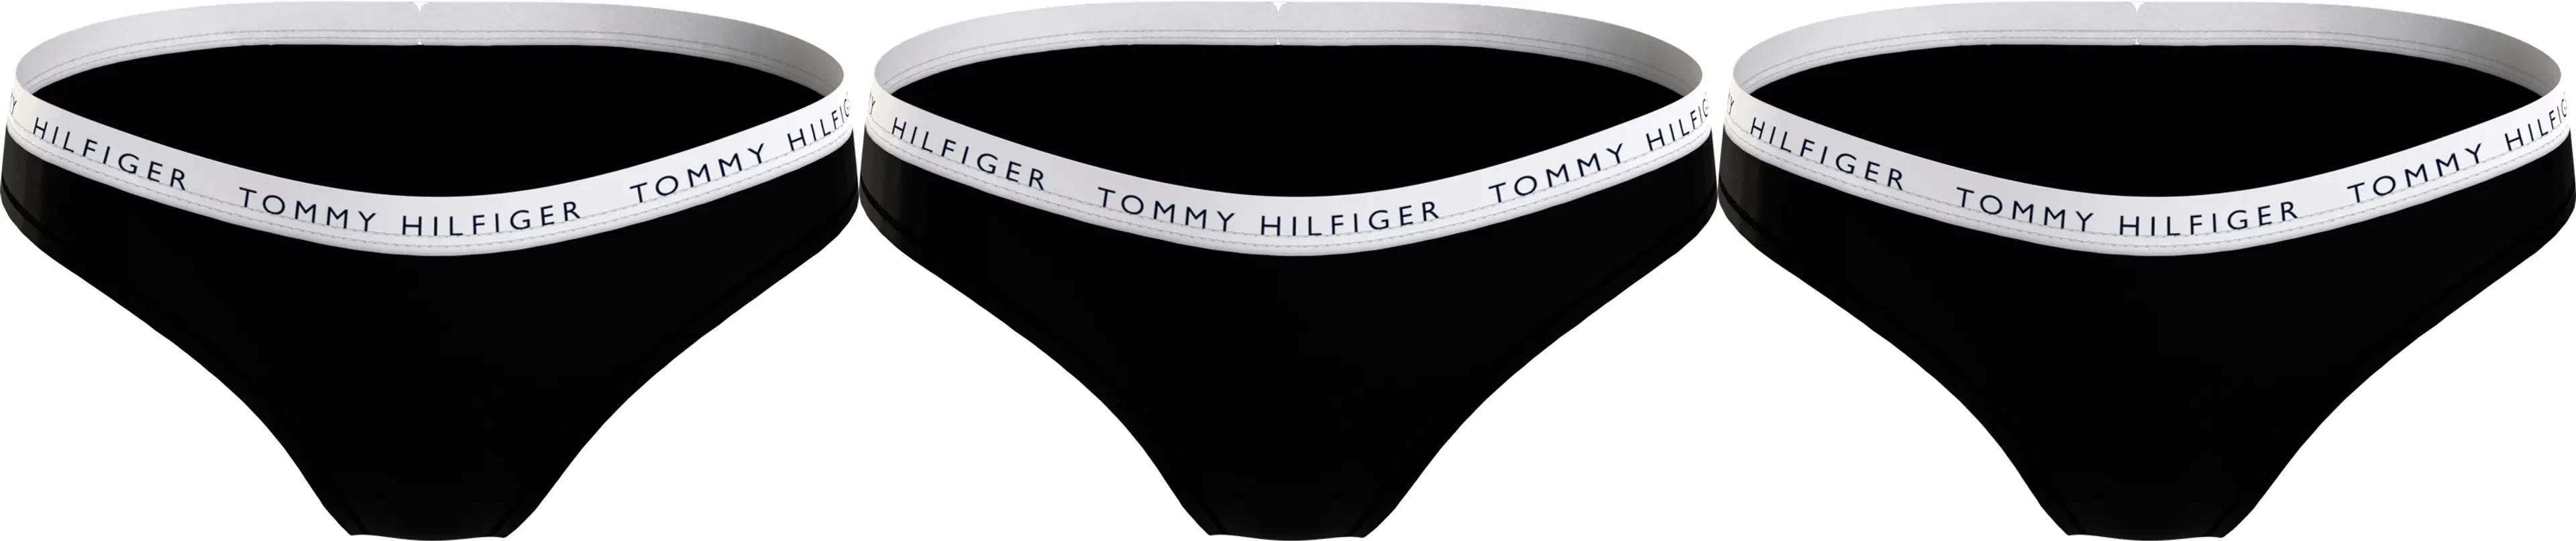 Tommy Hilfiger Bikinit 3kpl